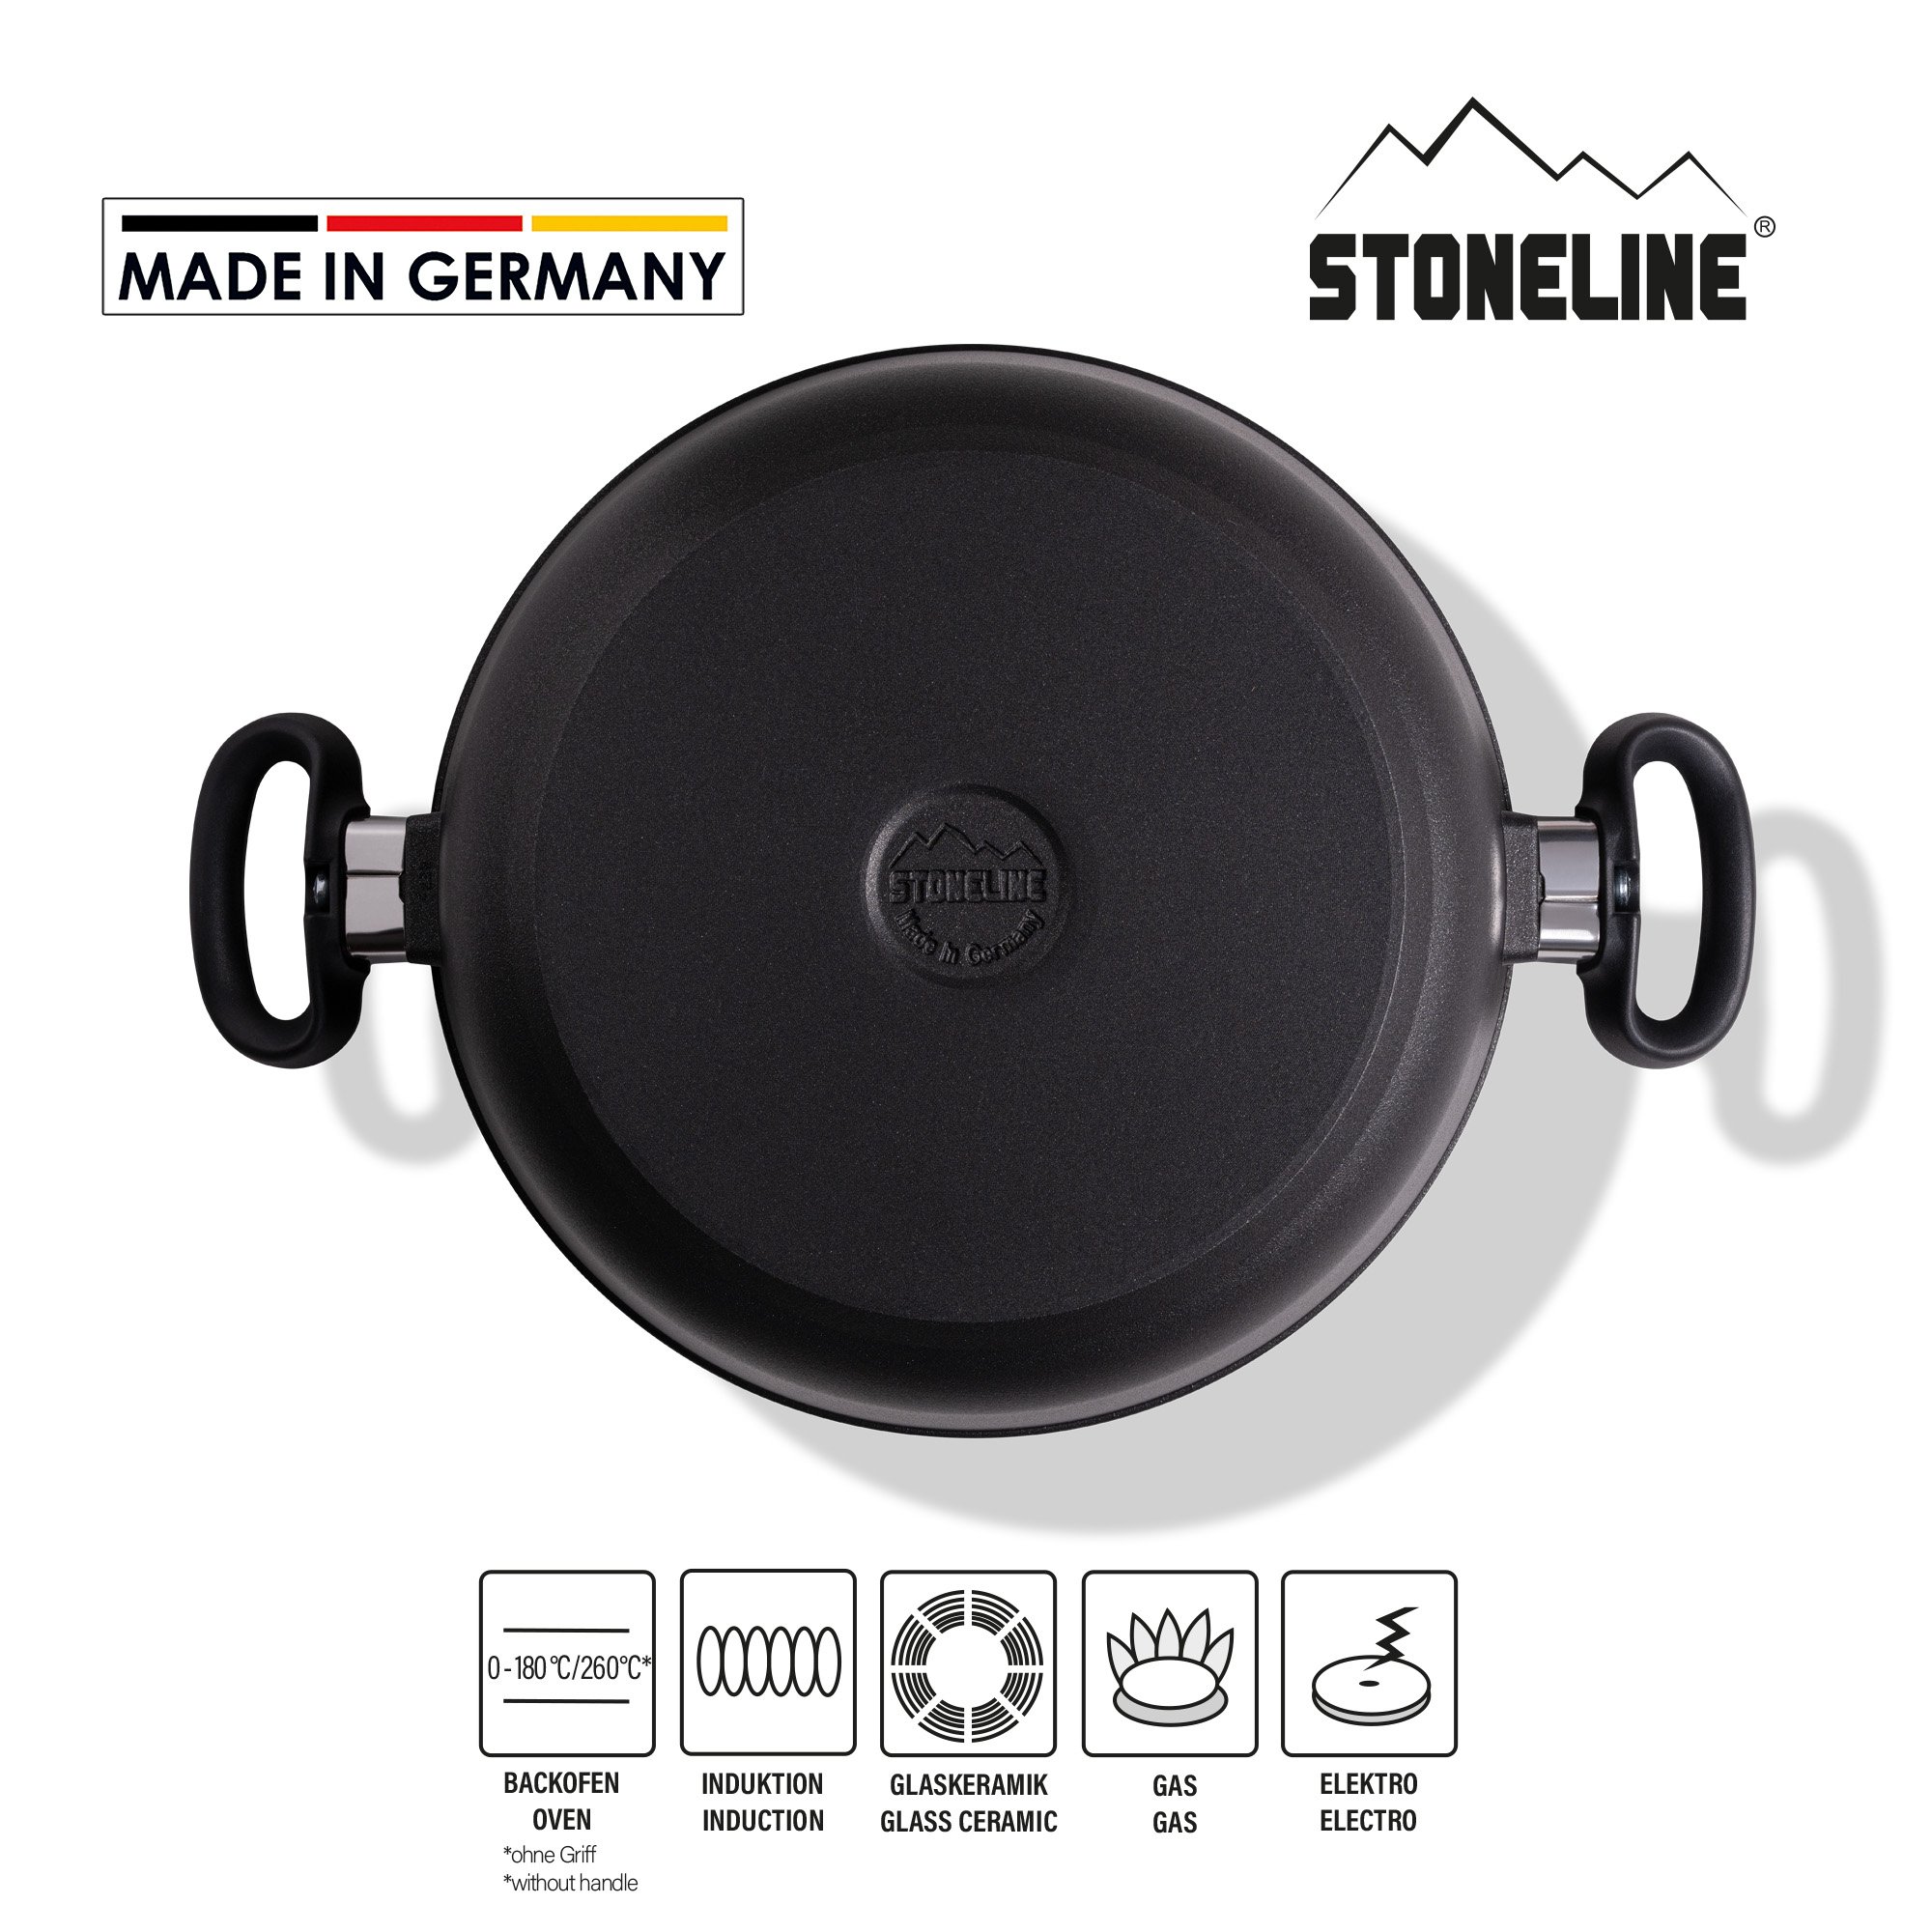 STONELINE® Pentola 26 cm, con Coperchio, Pentola Grande Antiaderente MADE IN GERMANY